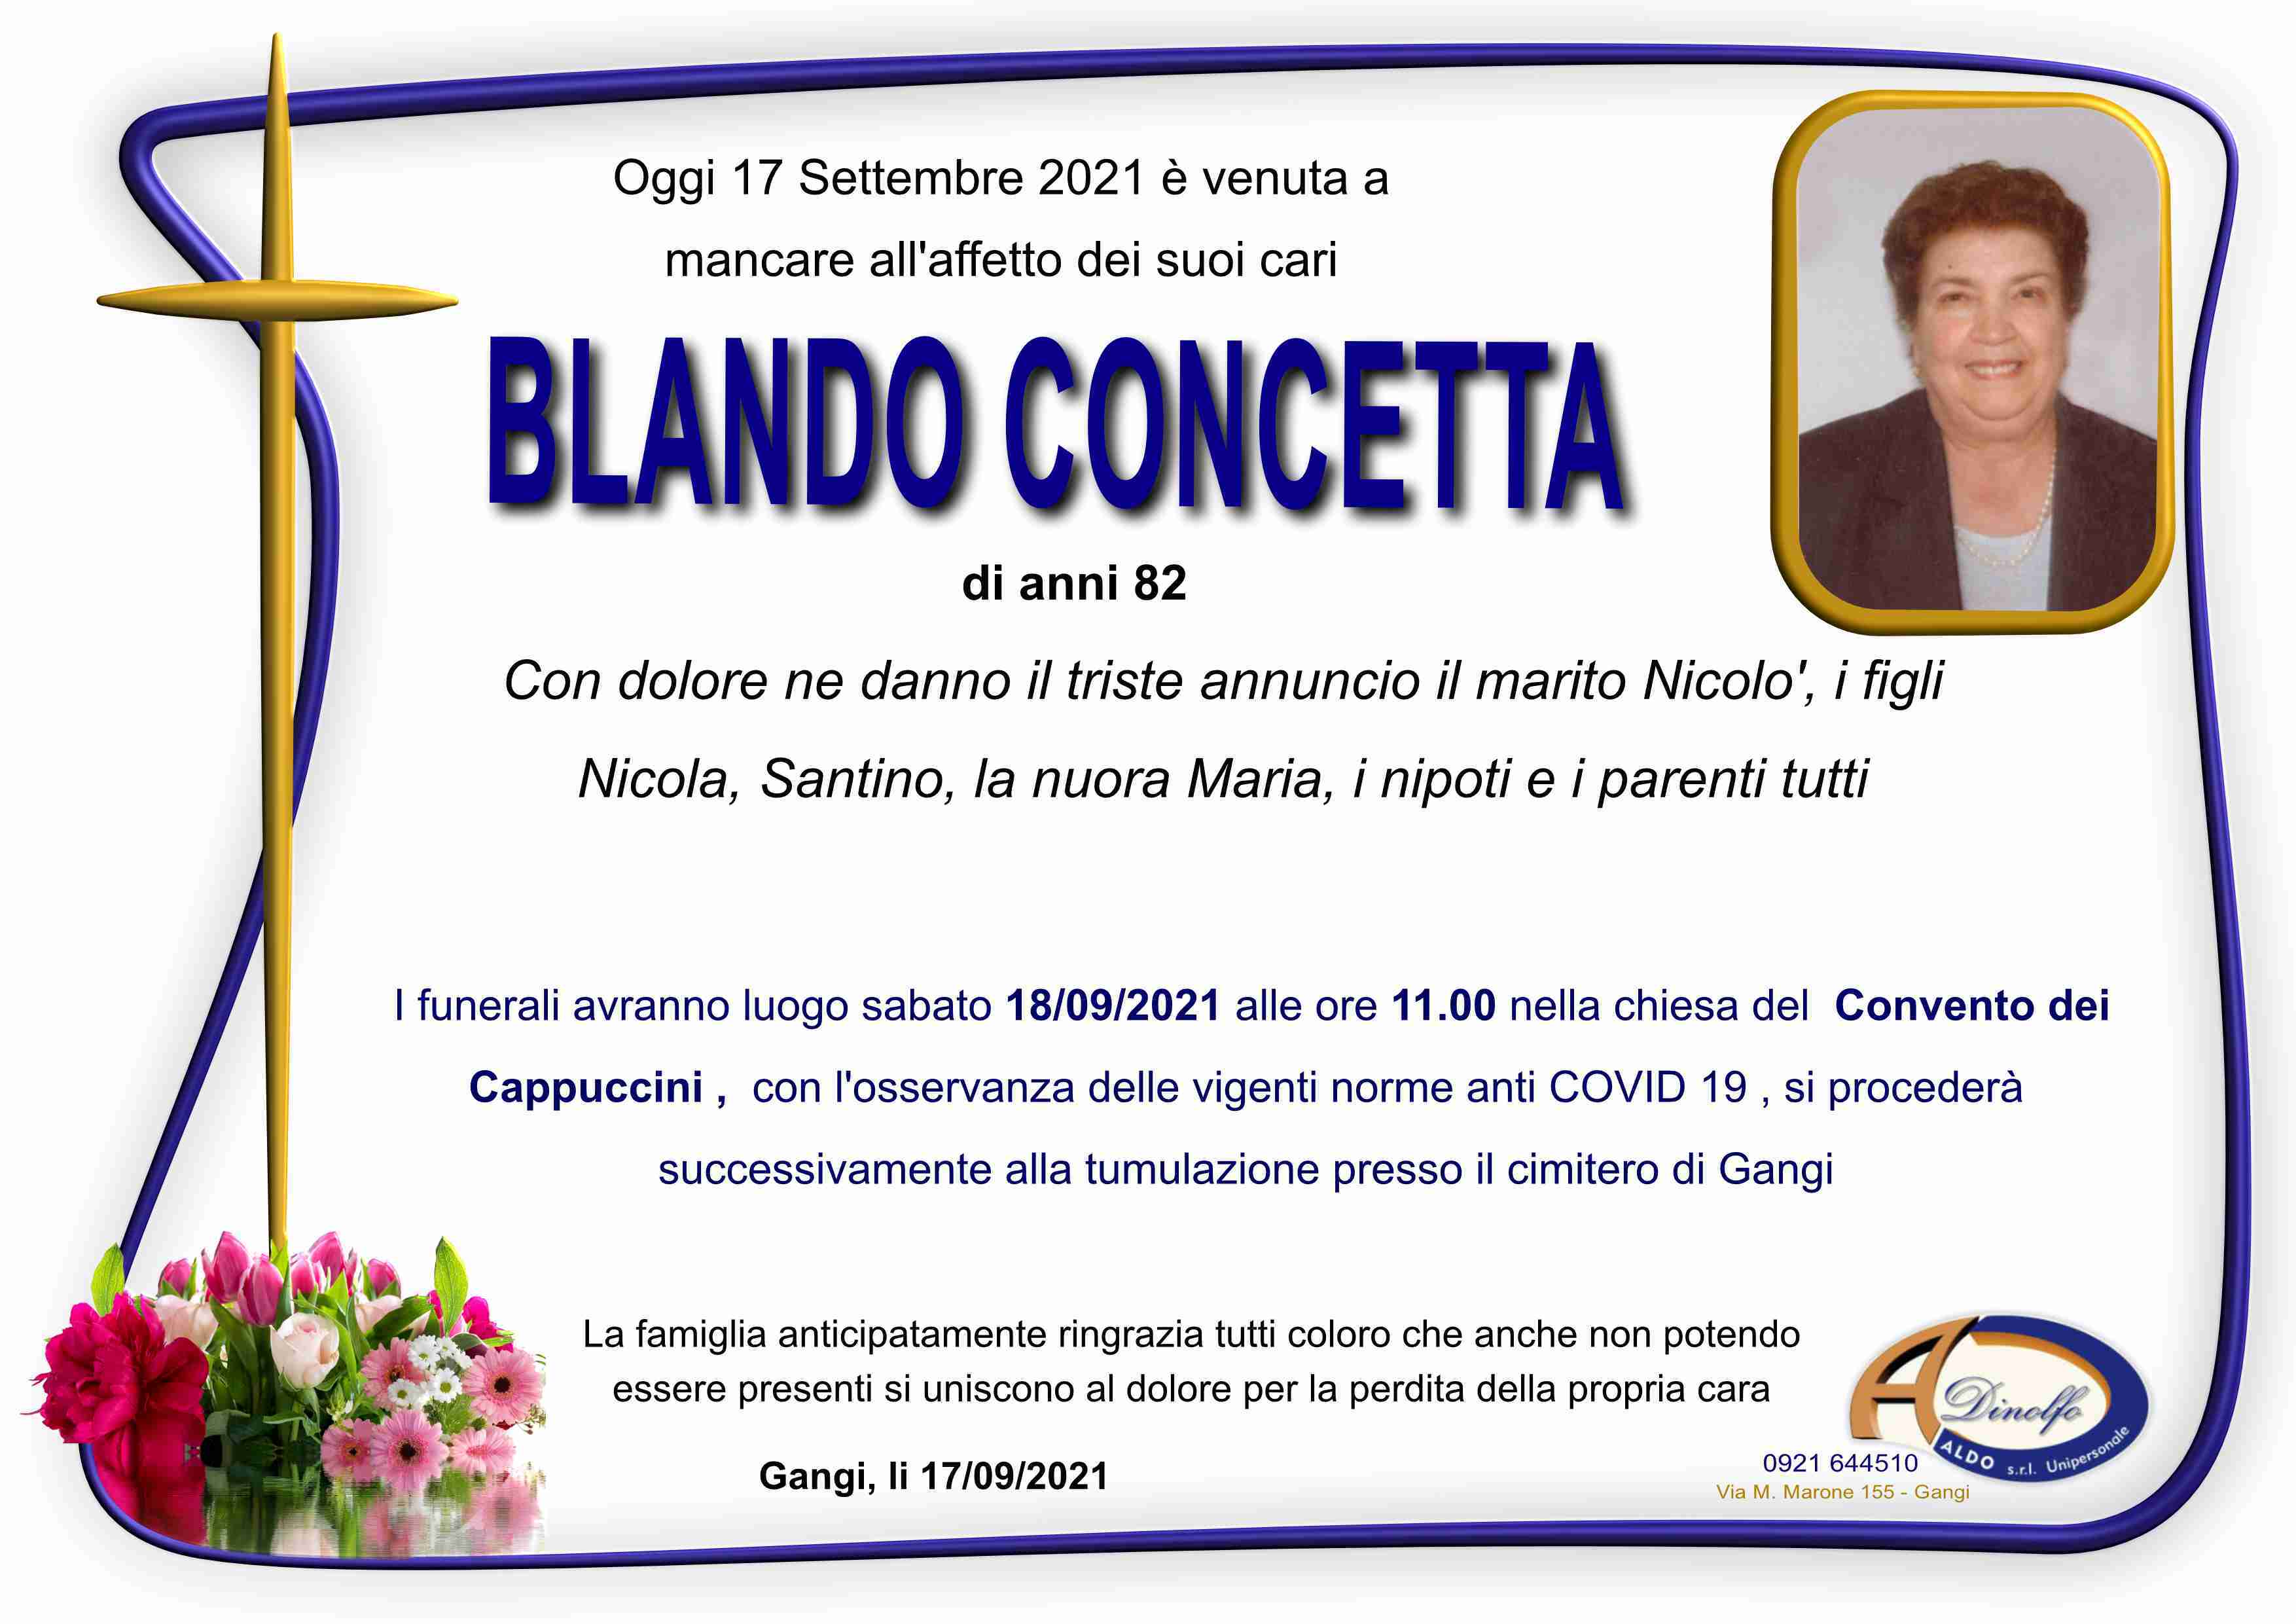 Concetta Blando